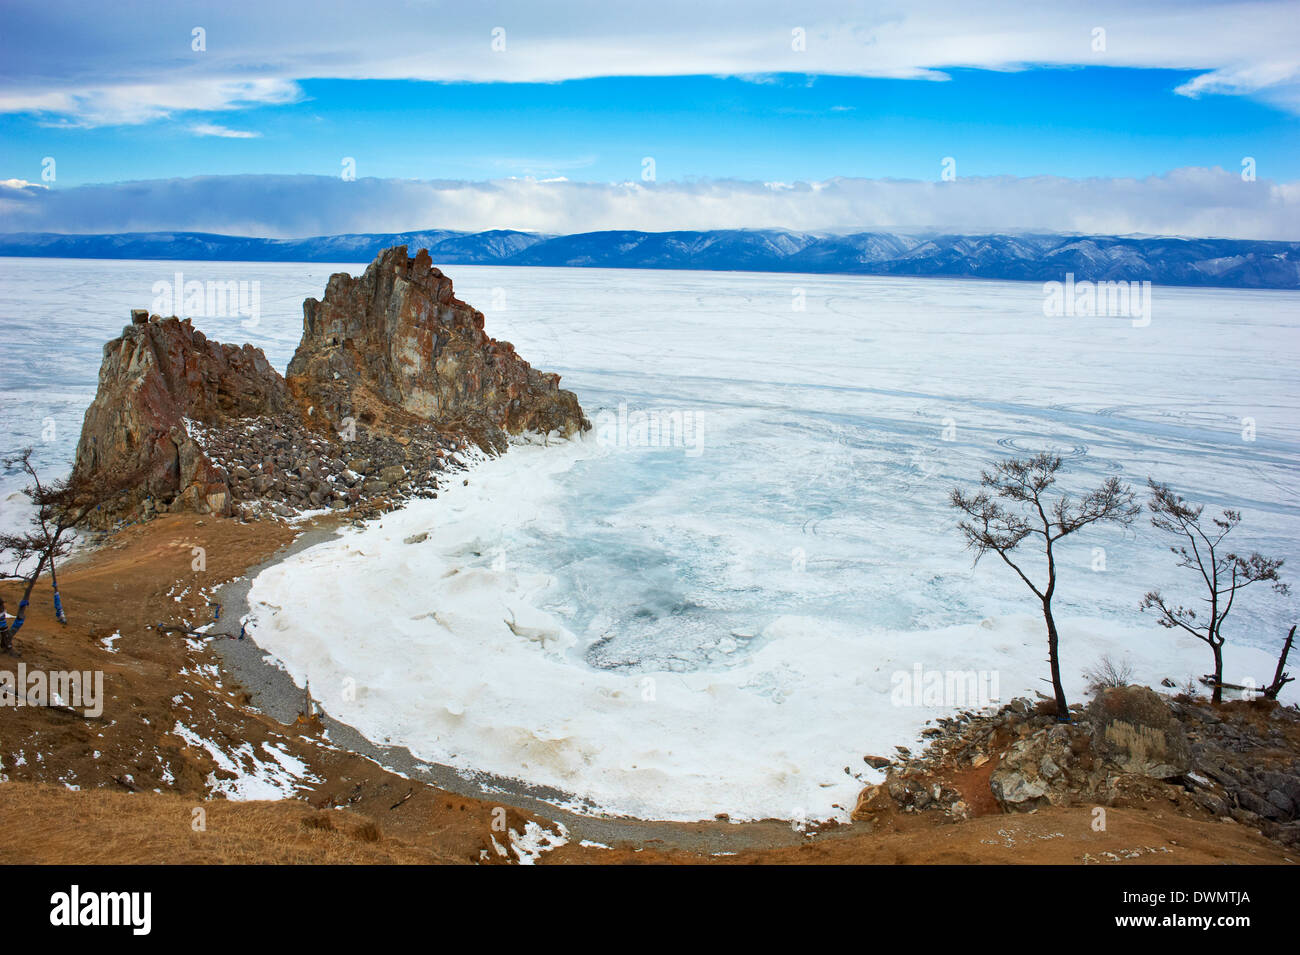 Shaman rock, Maloe più piccolo (mare), Olkhon island, il lago Baikal, sito UNESCO, Oblast di Irkutsk, Siberia, Russia Foto Stock